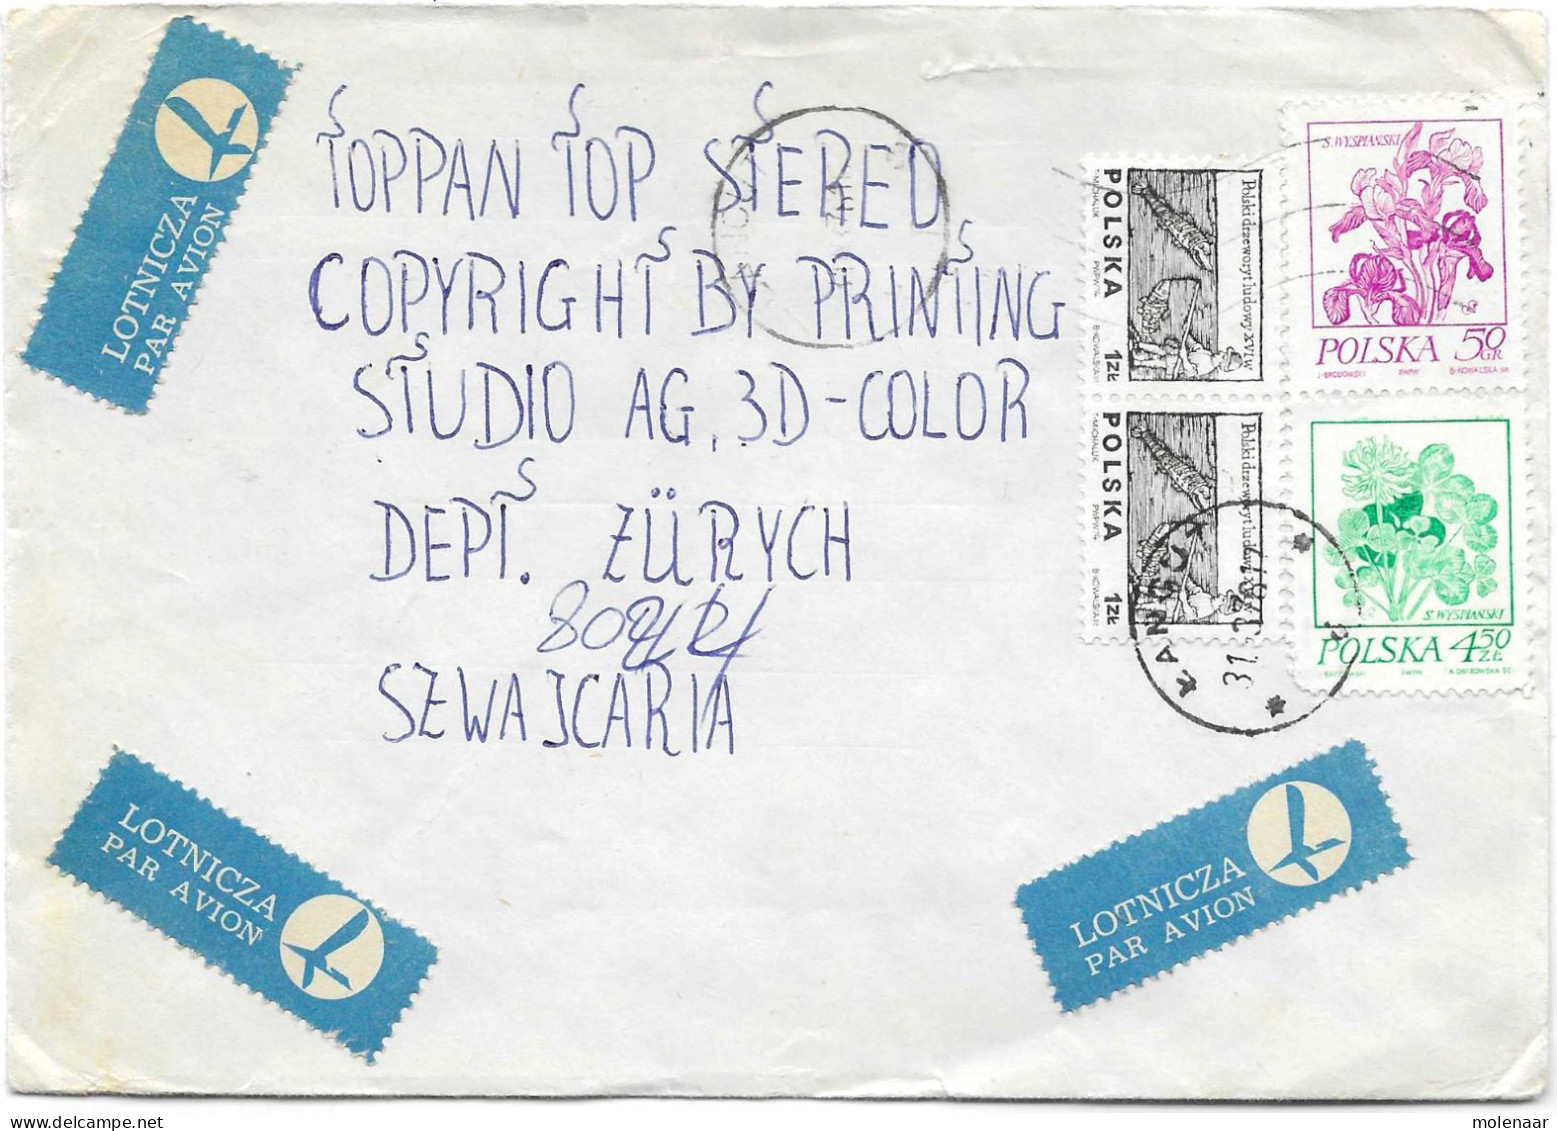 Postzegels > Europa > Polen > 1944-.... Republiek > 1971-80 > Brief Met 4 Postzegels (17132) - Briefe U. Dokumente